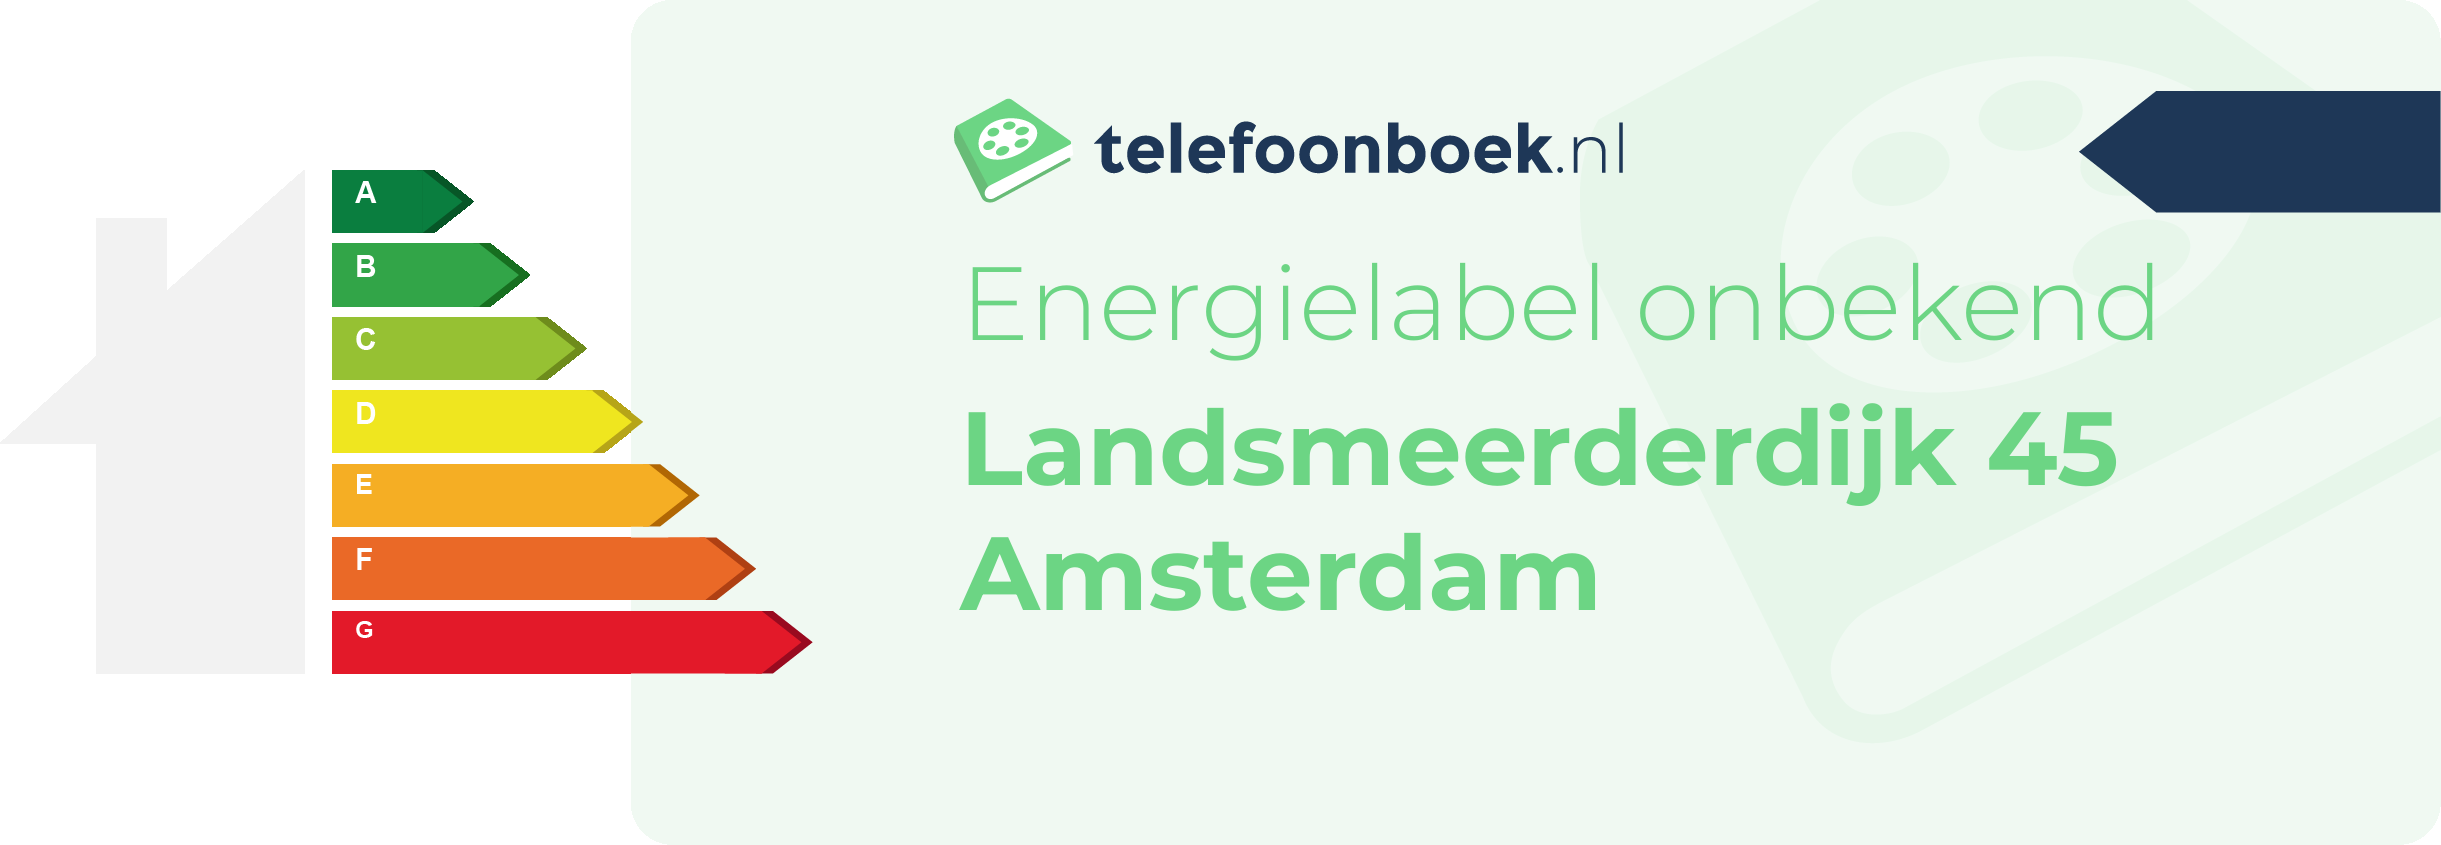 Energielabel Landsmeerderdijk 45 Amsterdam